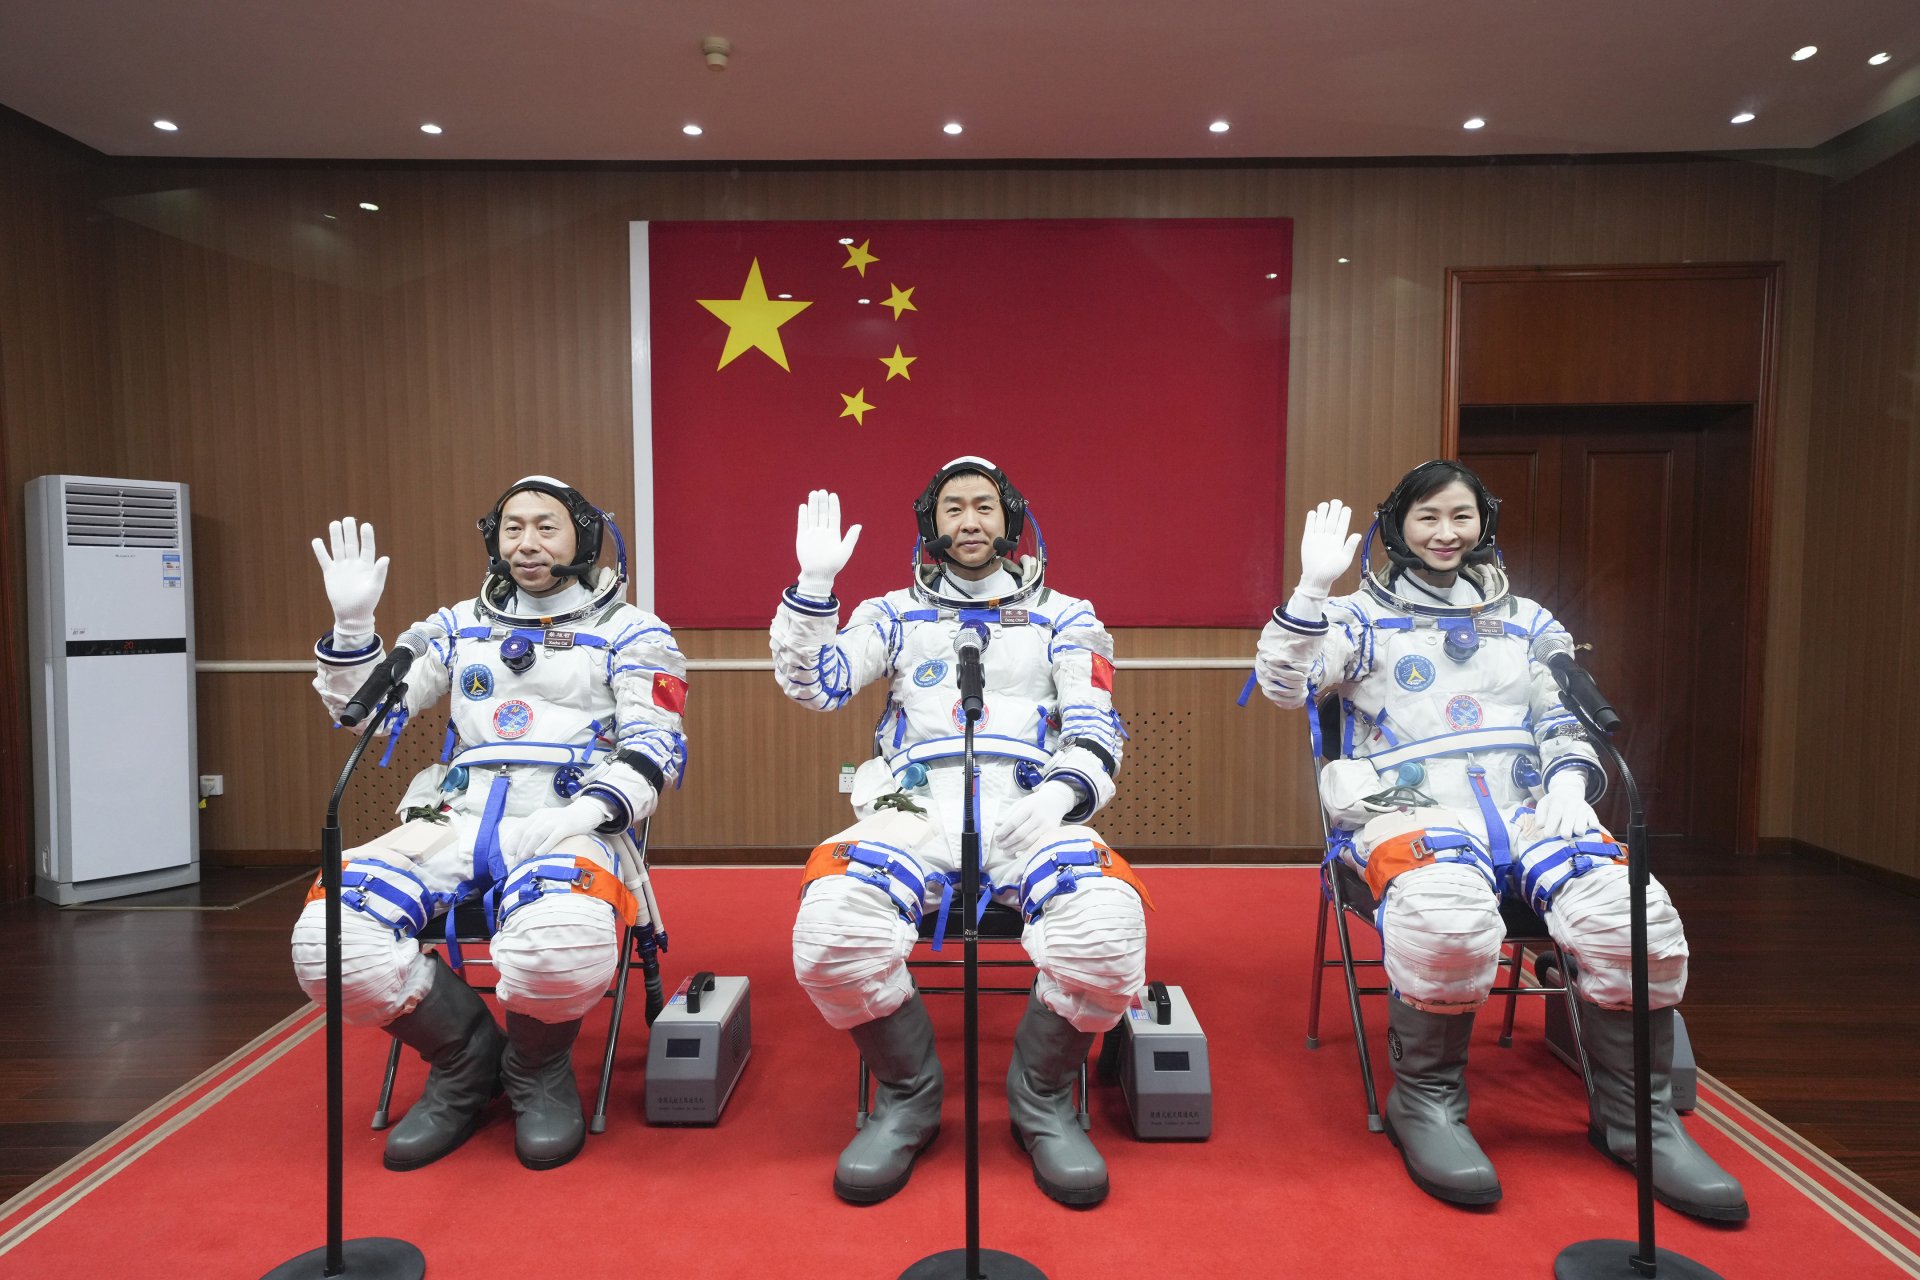 Снимка, публикувана от Синхуа, на китайските астронавти Цзай Сючжъ, Чън Дун и Лю Ян преди старта на космическата мисия в центъра за изстрелване в Северозападен Китай в неделя, 5 юни 2022 г.